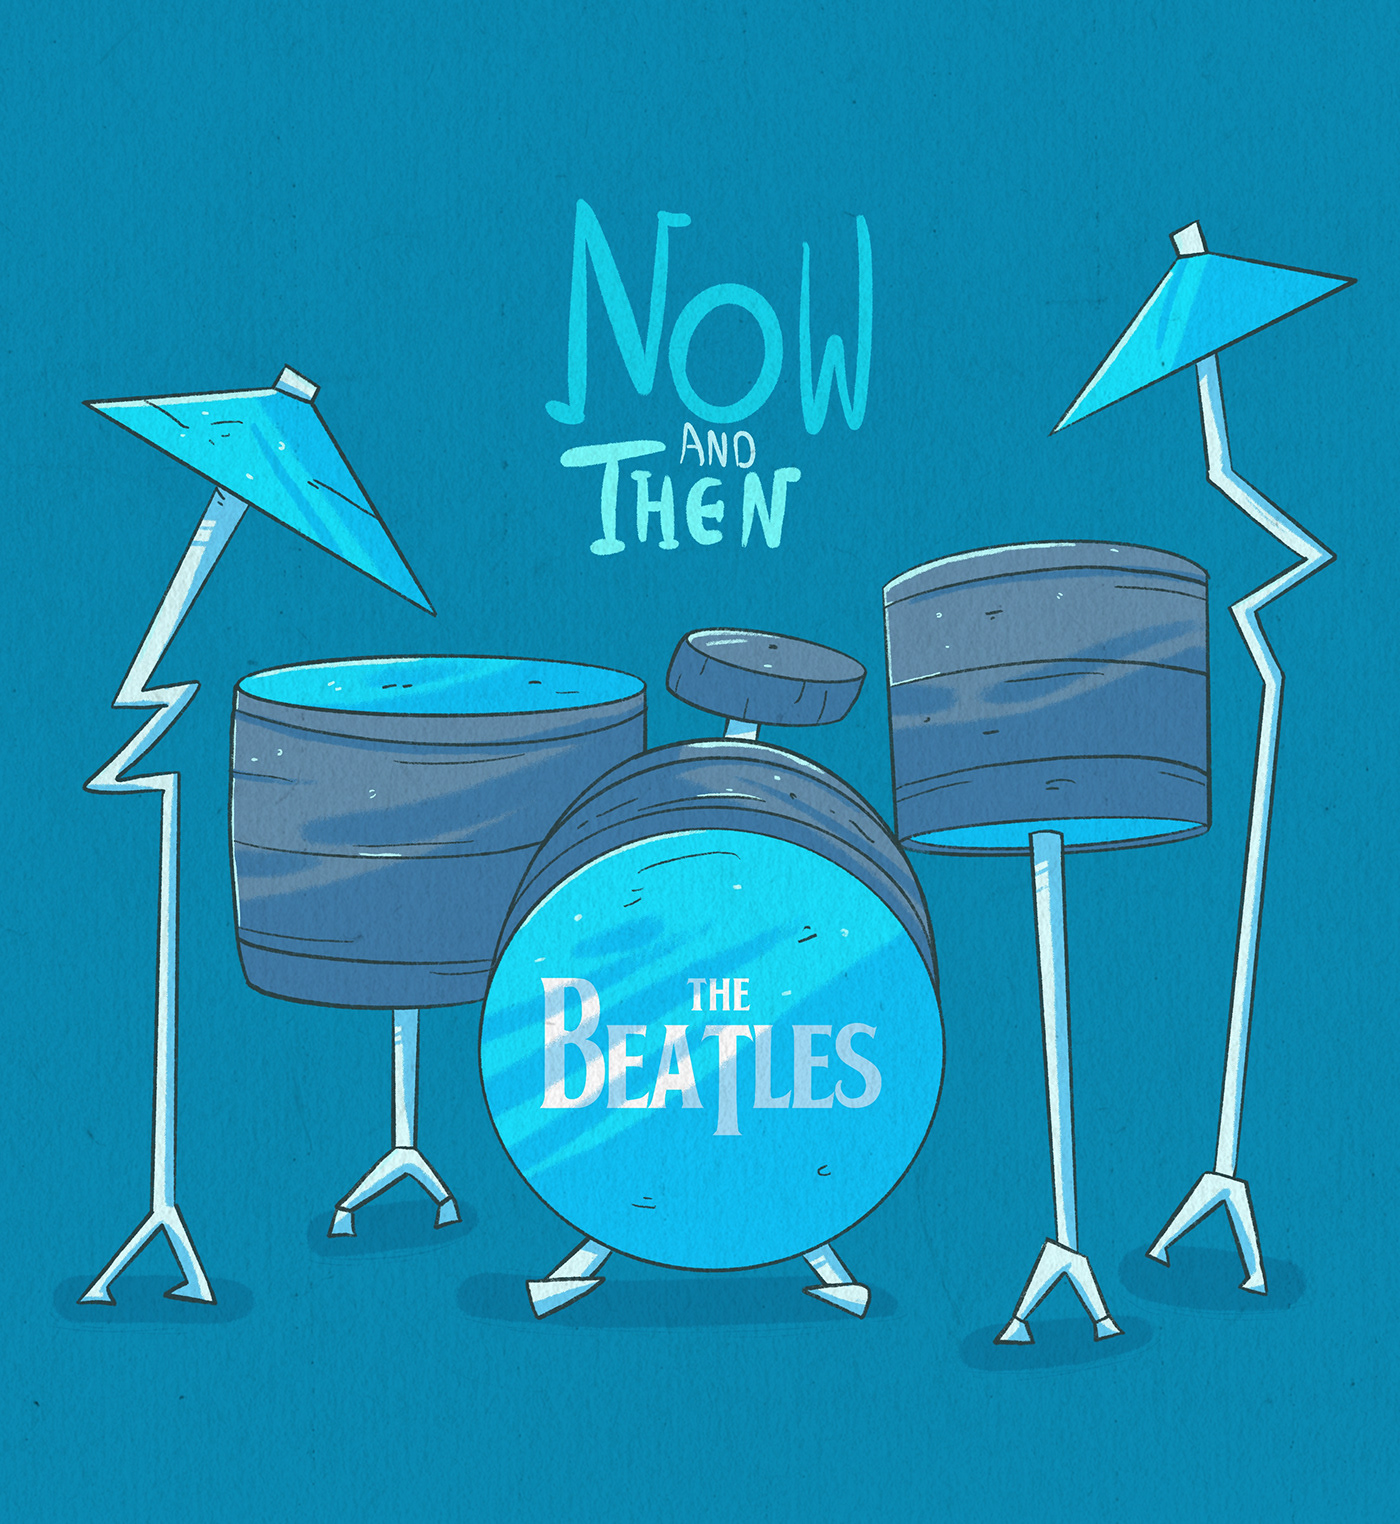 music Beatles John Lennon Paul McCartney the beatles ILLUSTRATION  Advertising  rock concert band